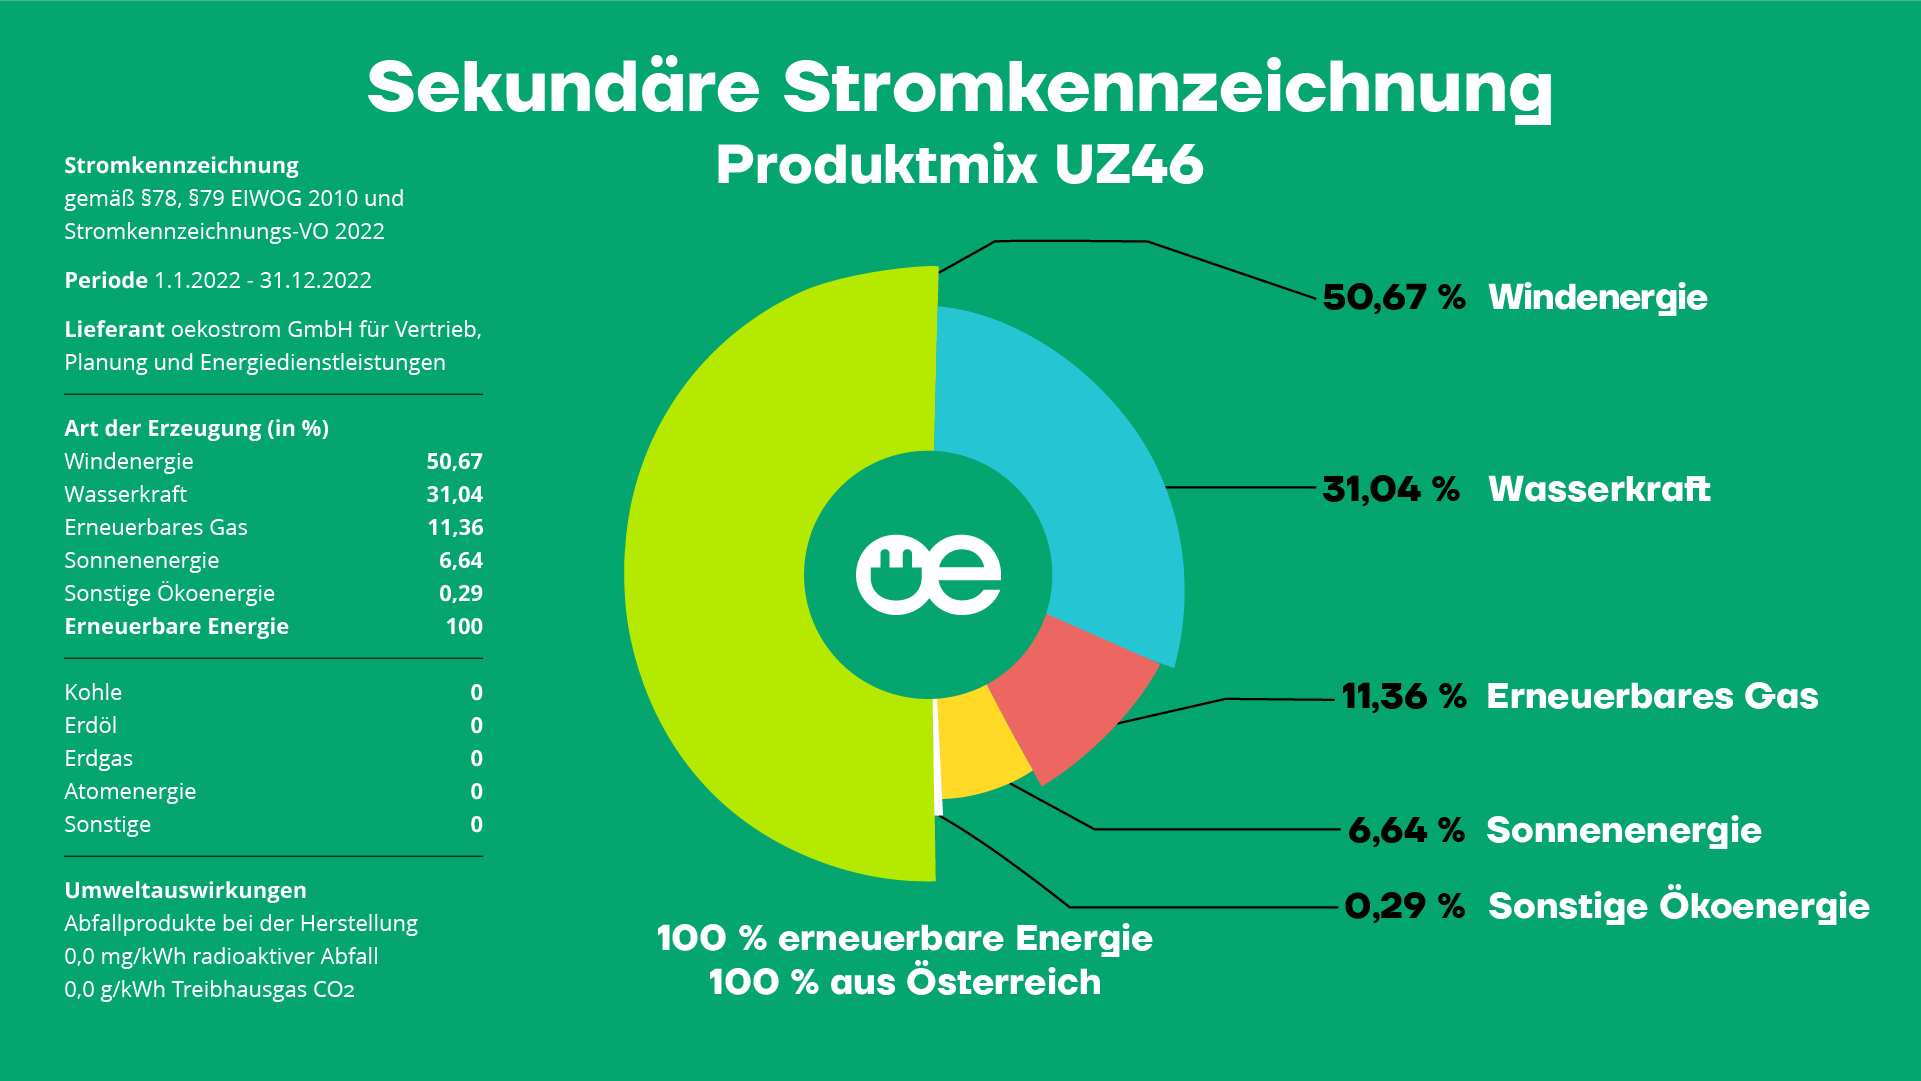 Sekundäre Stromkennzeichnung Produktmix UZ46 der oekostrom AG 2022